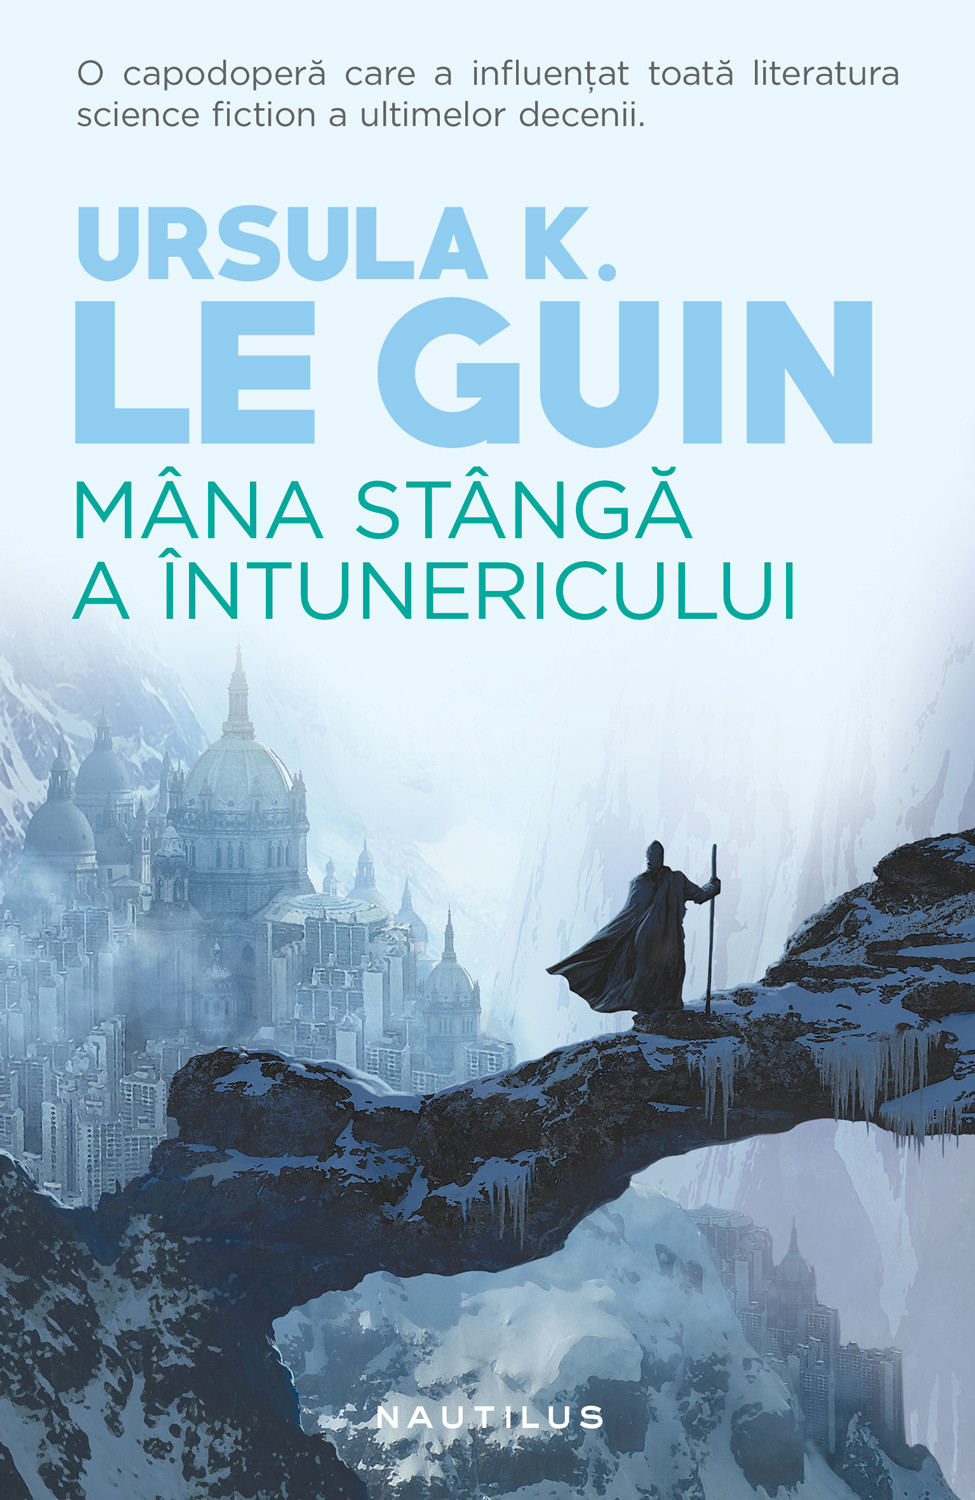 eBook Mana stanga a intunericului - Ursula K. Le Guin